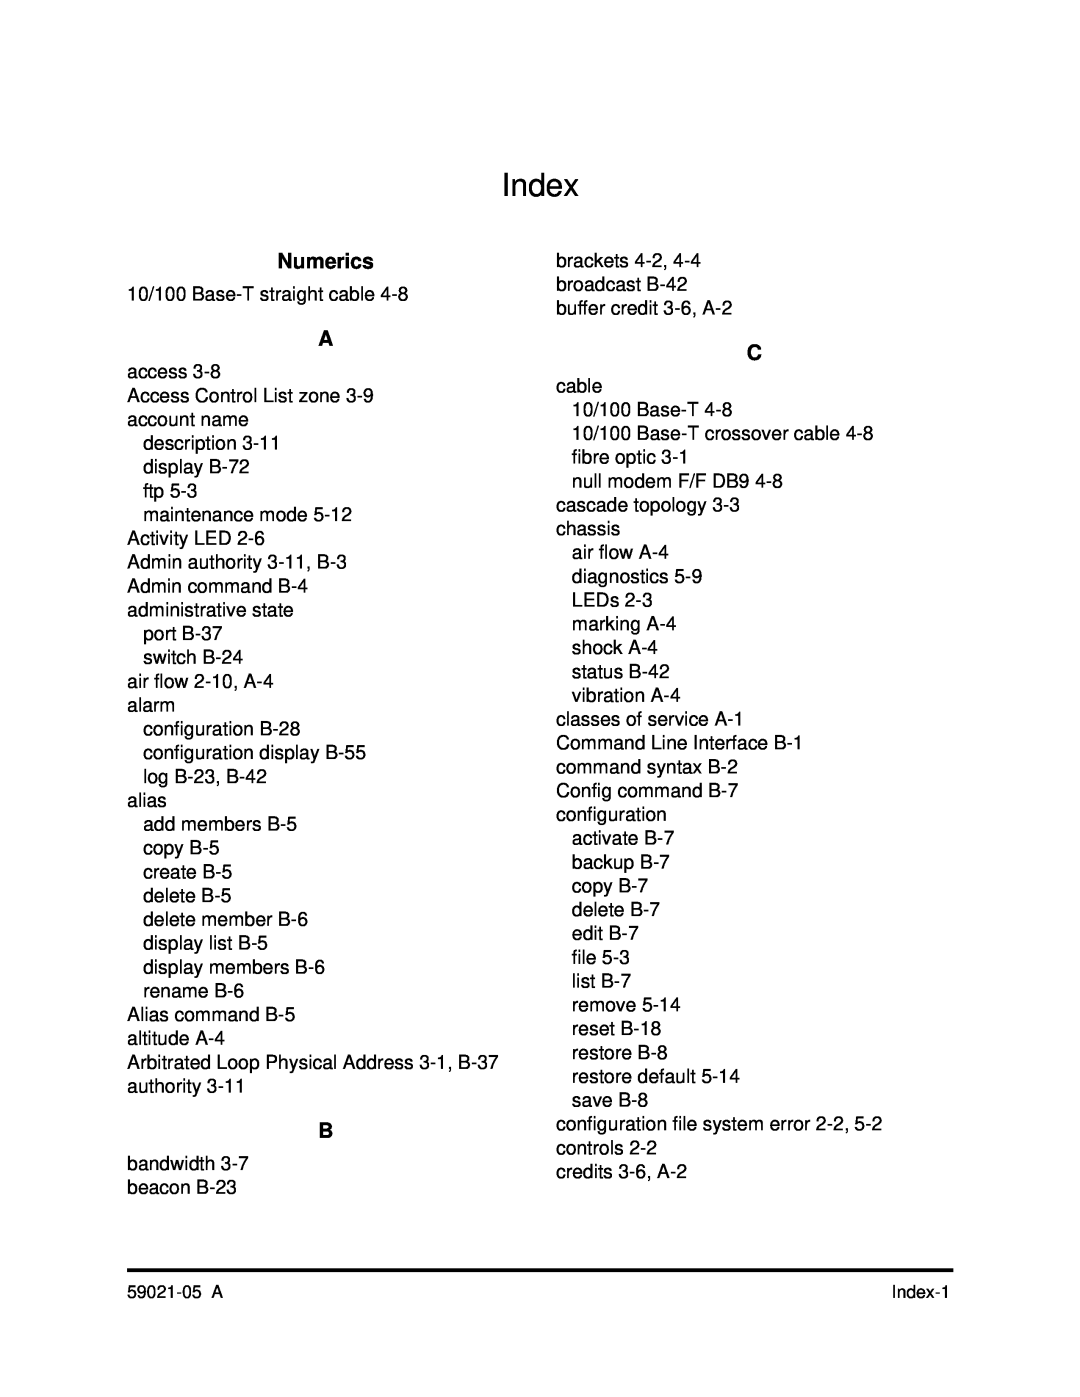 Q-Logic 59021-05 manual Index, Numerics 